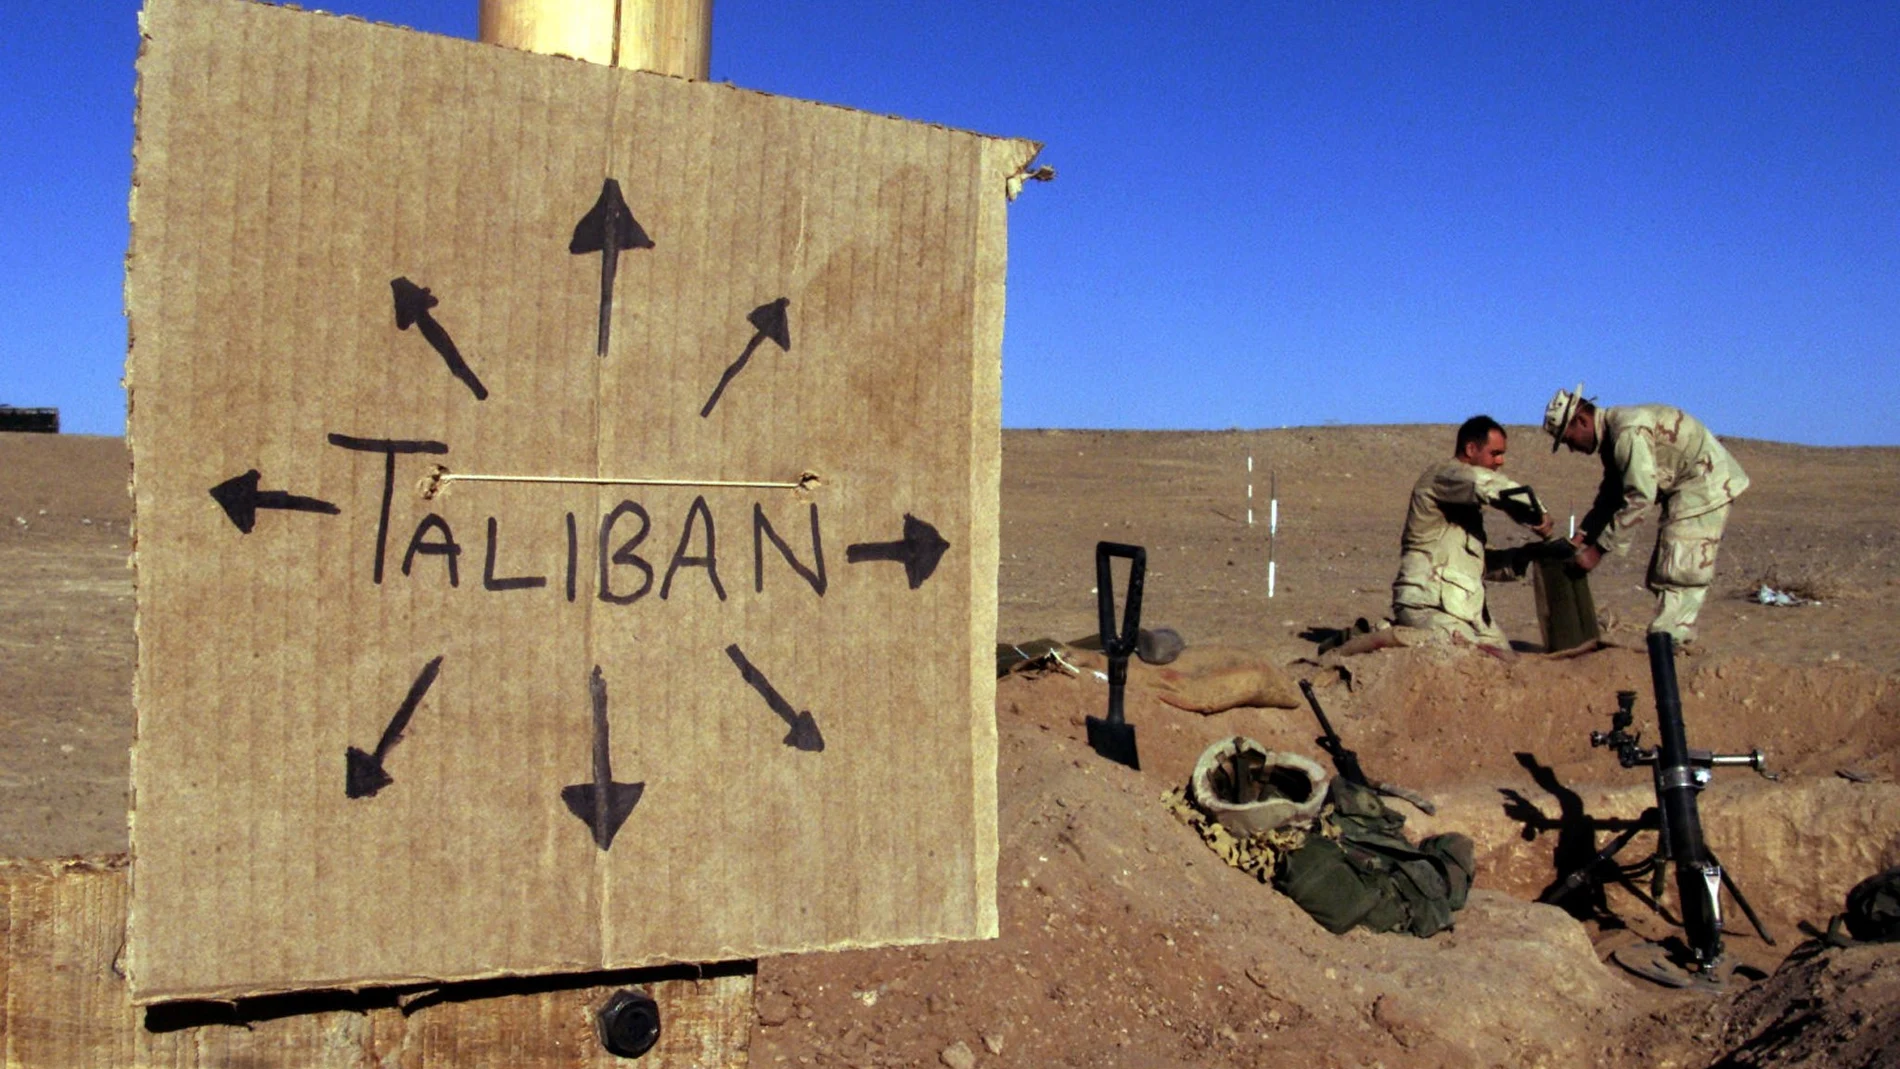 Marines estadounidenses llenan sacos de arena cerca de un letrero de cartón que recuerda a todos que las fuerzas talibanes podrían estar en cualquier lugar, en el sur de Afganistán el 1 de diciembre de 2001